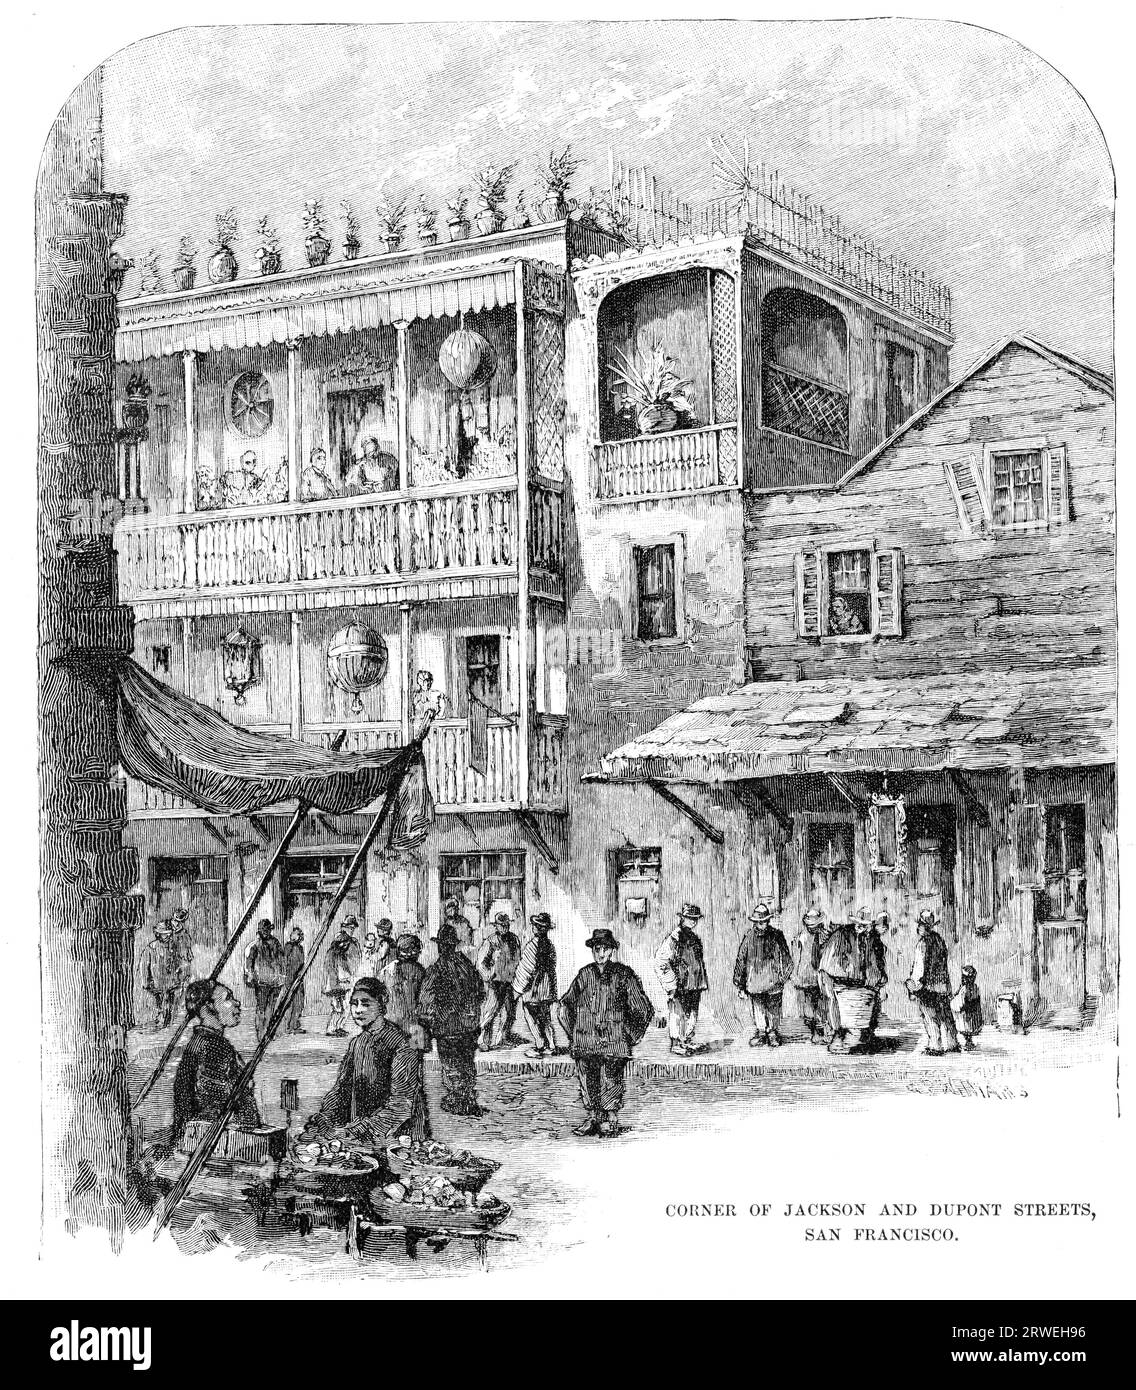 Ecke Jackson Street und DuPont Street, San Francisco, USA. Ursprünglich erschien die Ausgabe des Harpers New Monthly Magazine im Mai 1883 Stockfoto